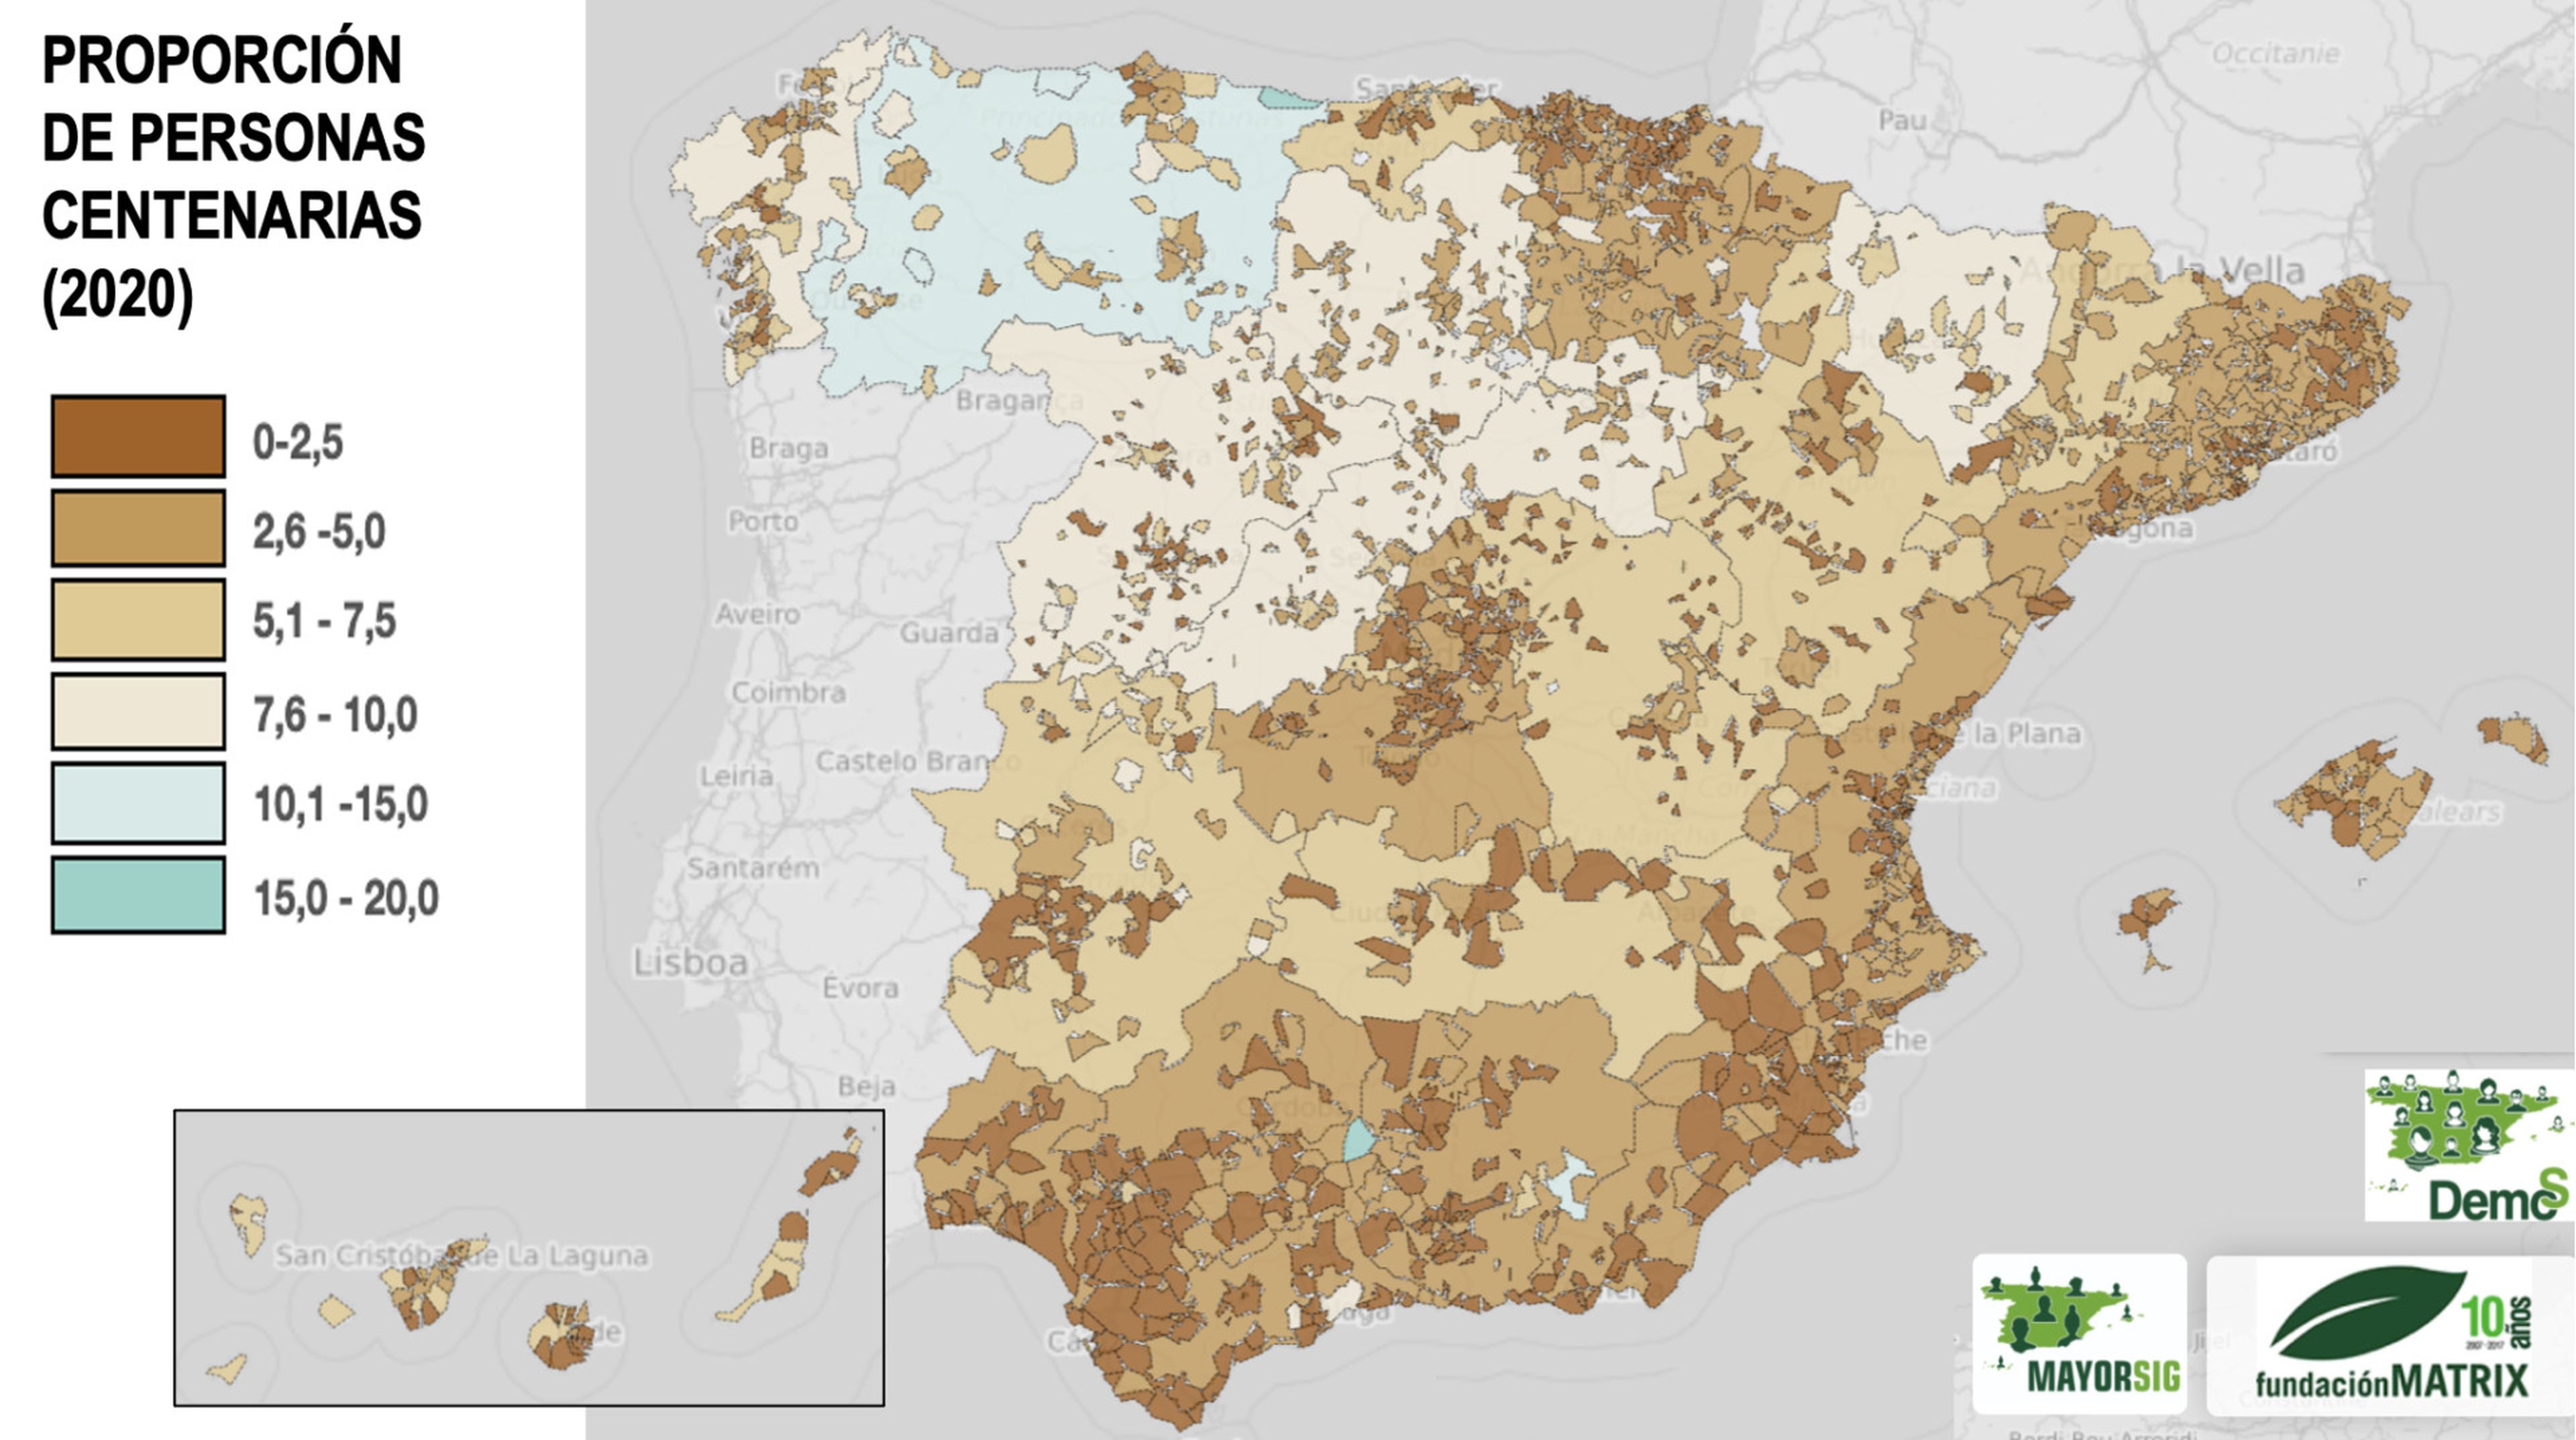 Este mapa de la Fundación Matrix en colaboración con la Universidad de Vigo muestra la distribución actual, total y por sexos de los centenarios, así como su peso relativo en 700 poblaciones locales de diferentes municipios y agregados territoriales.